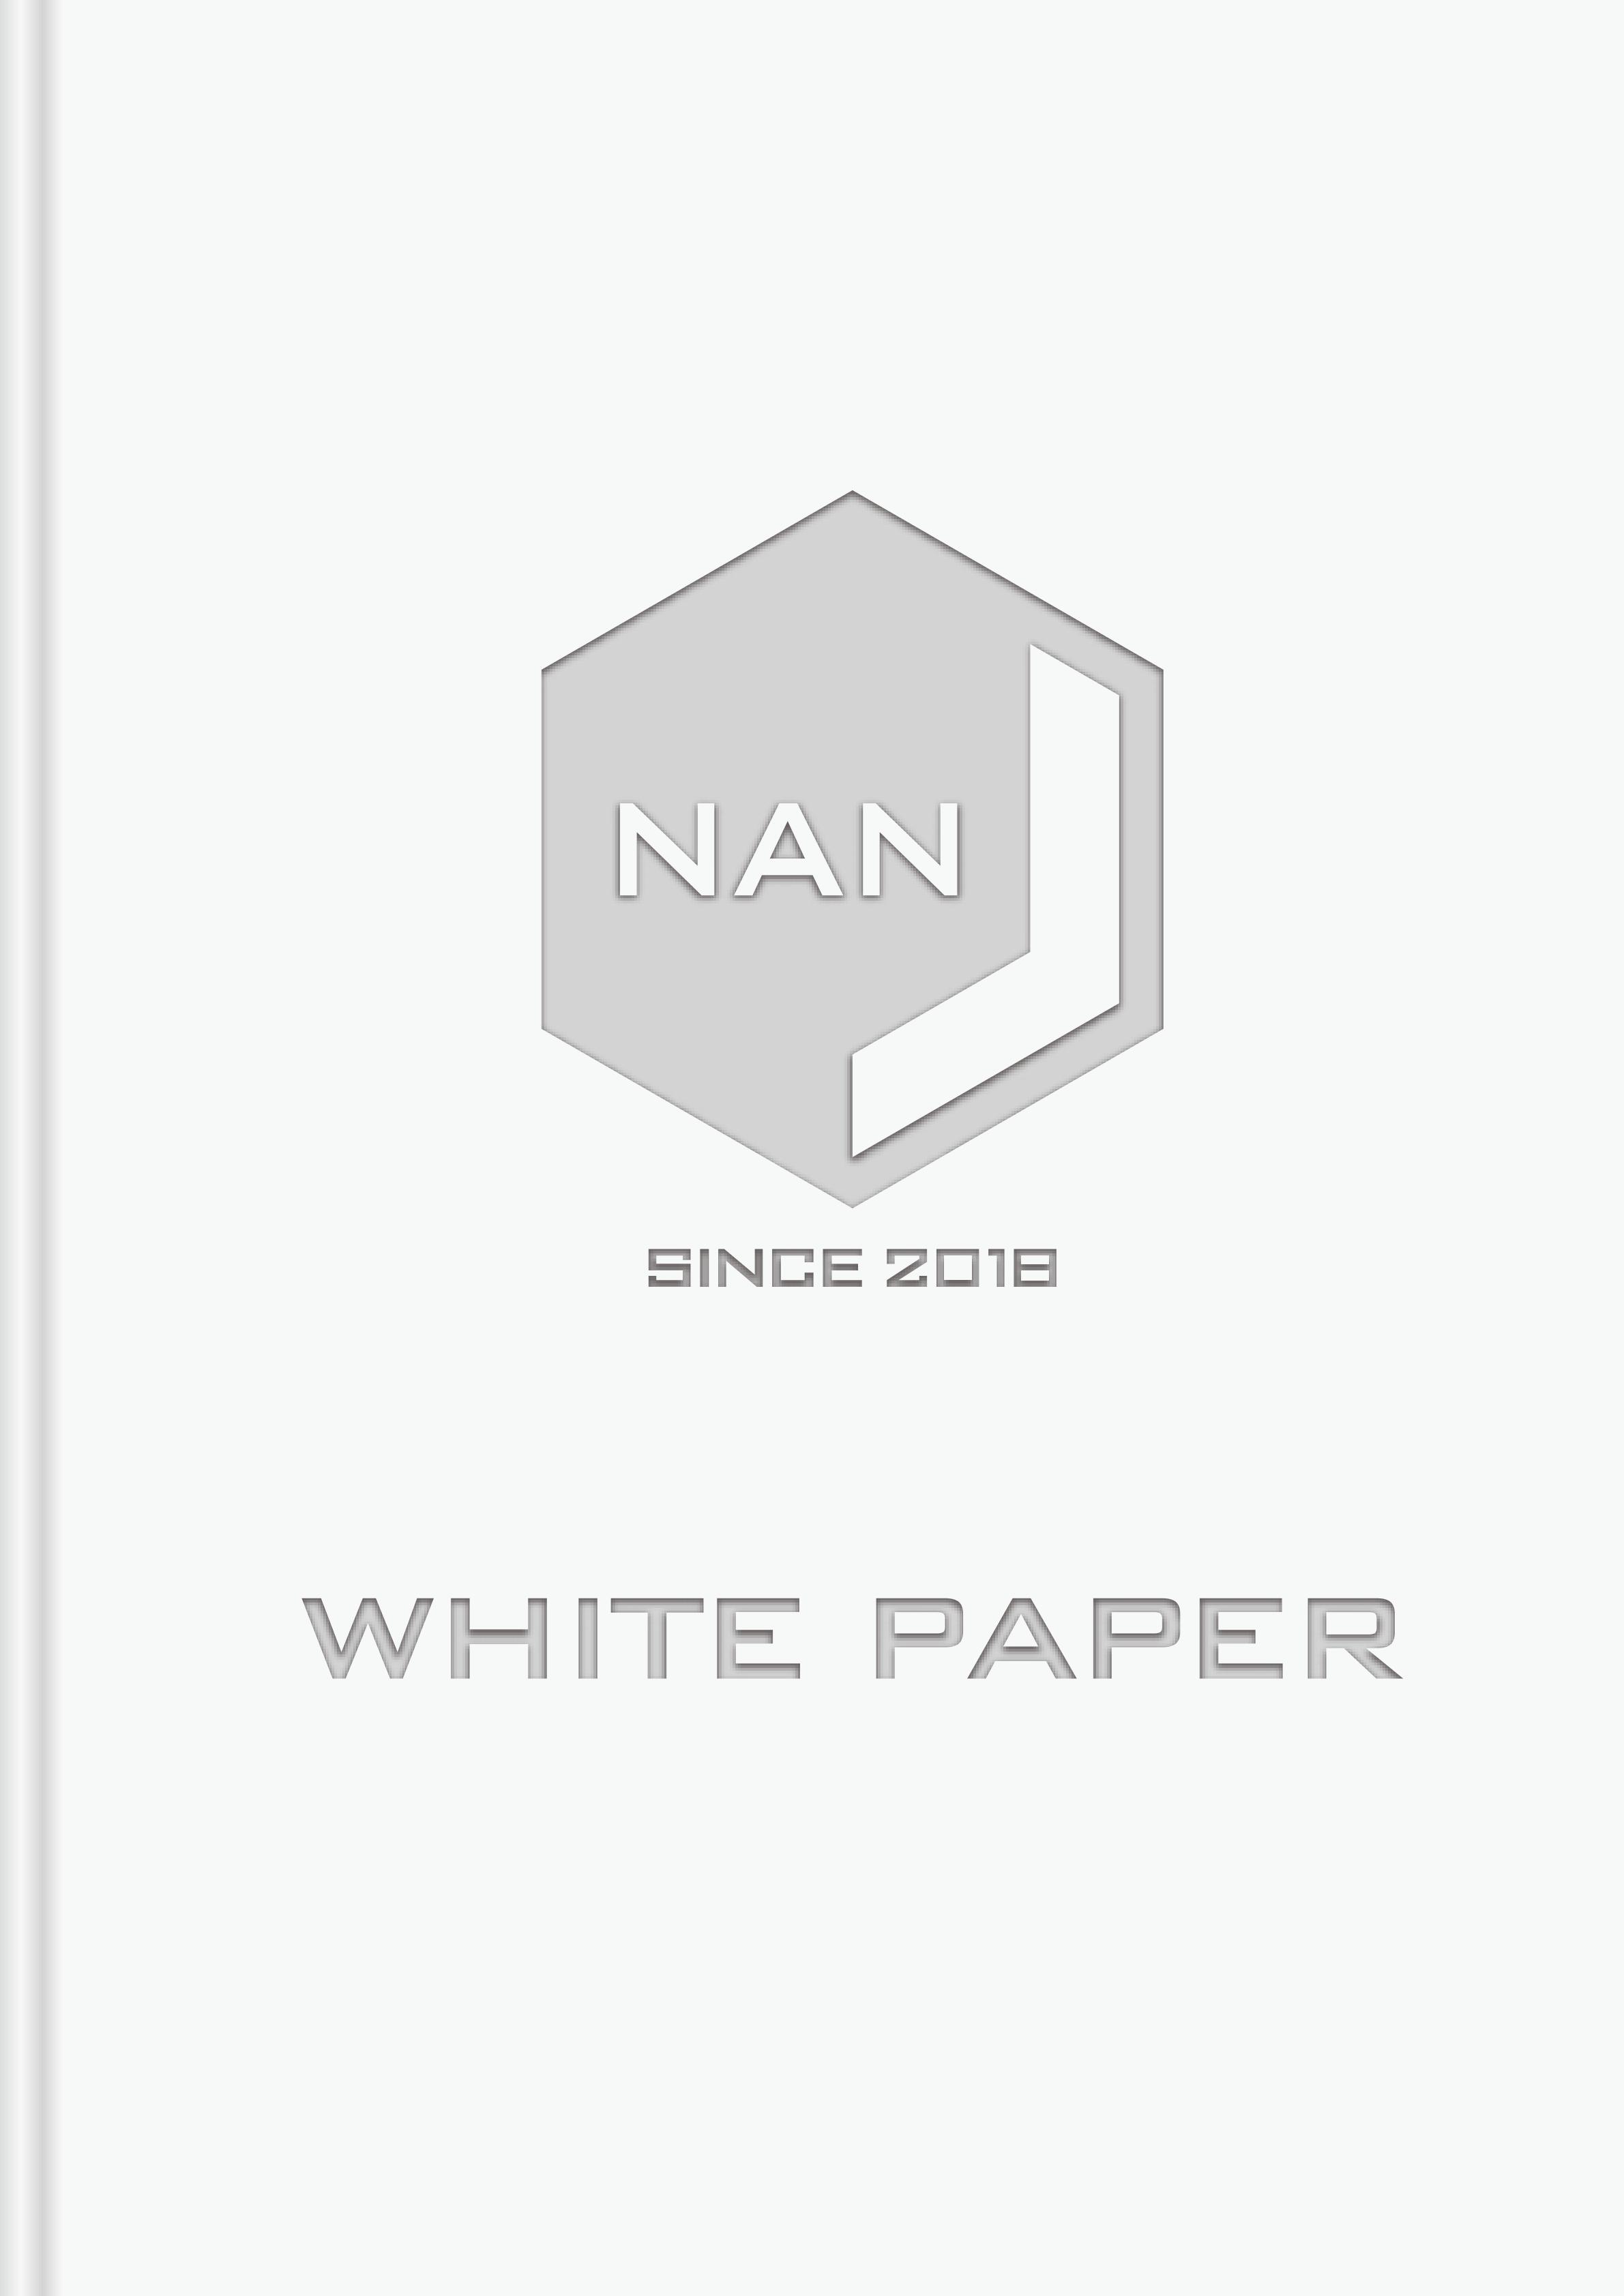 NANJ_white_paper_cn_00.jpg